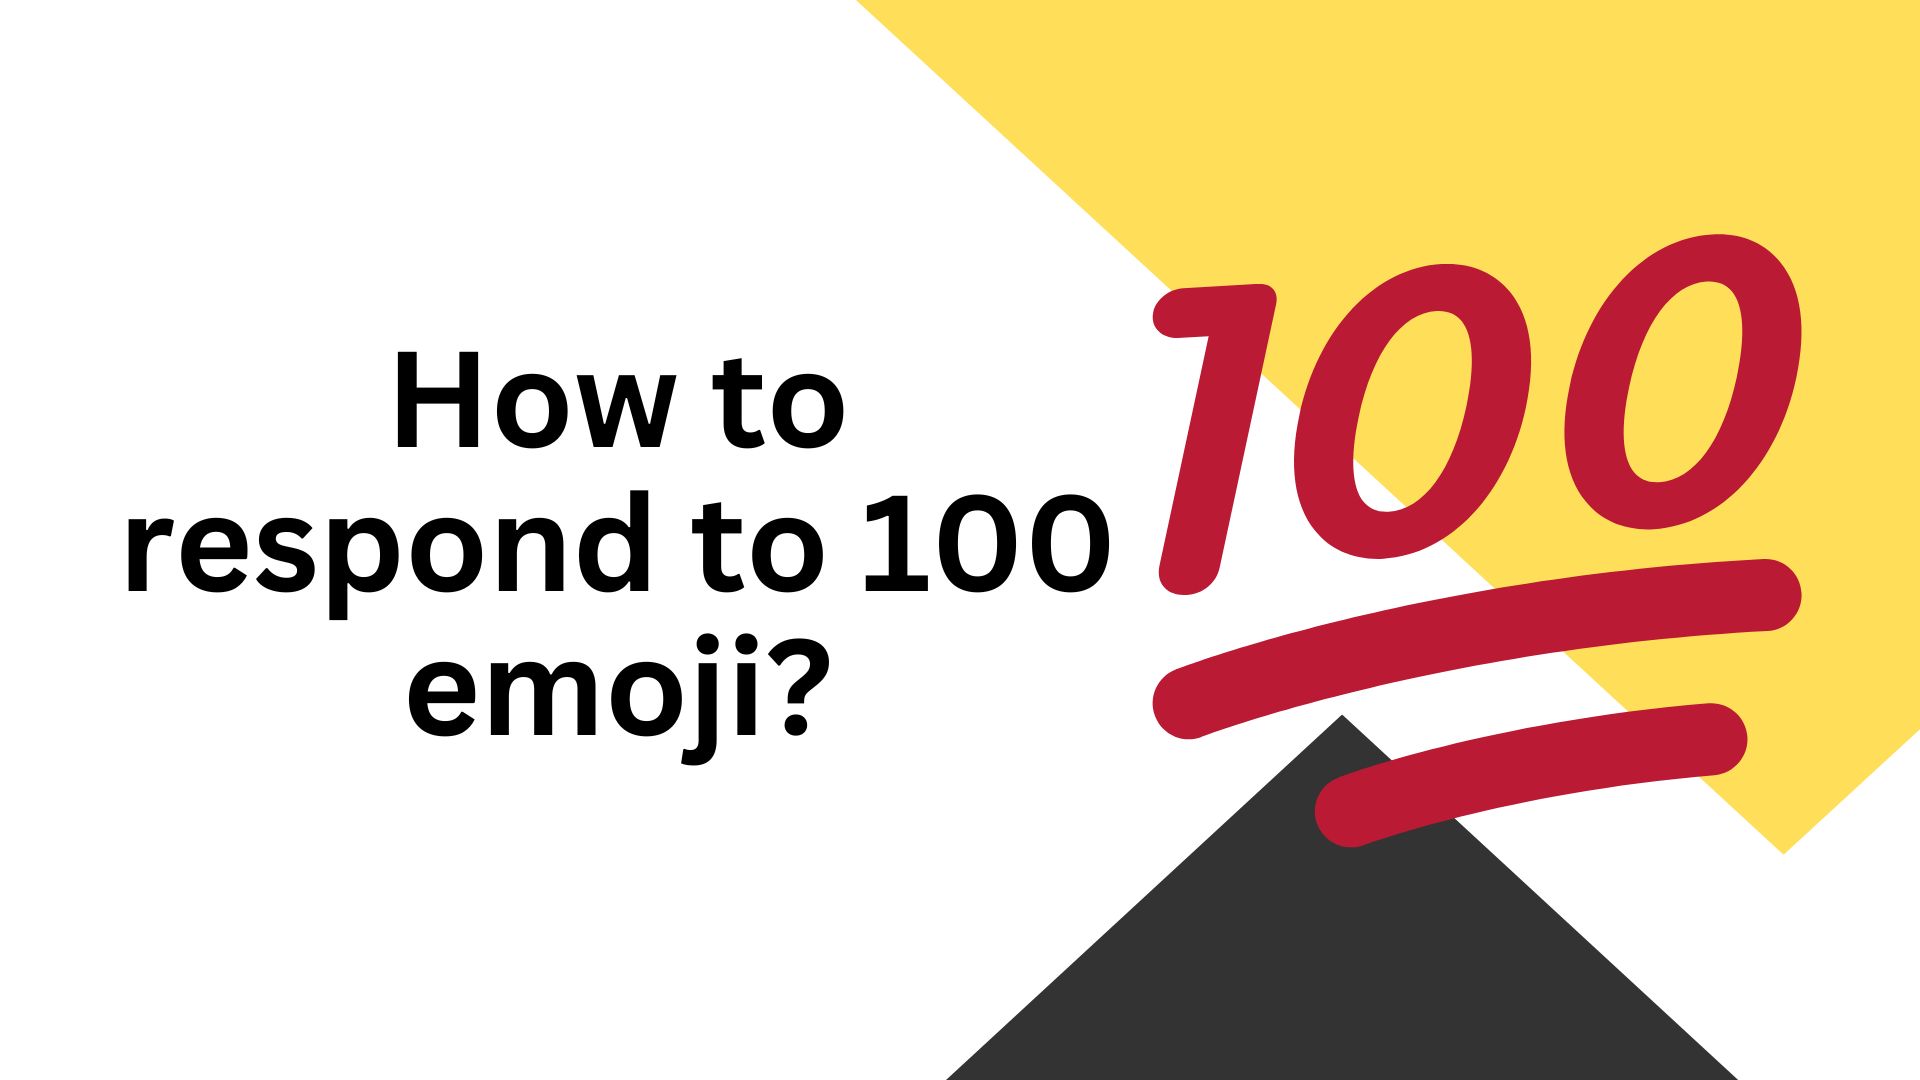 How to respond to 100 emoji